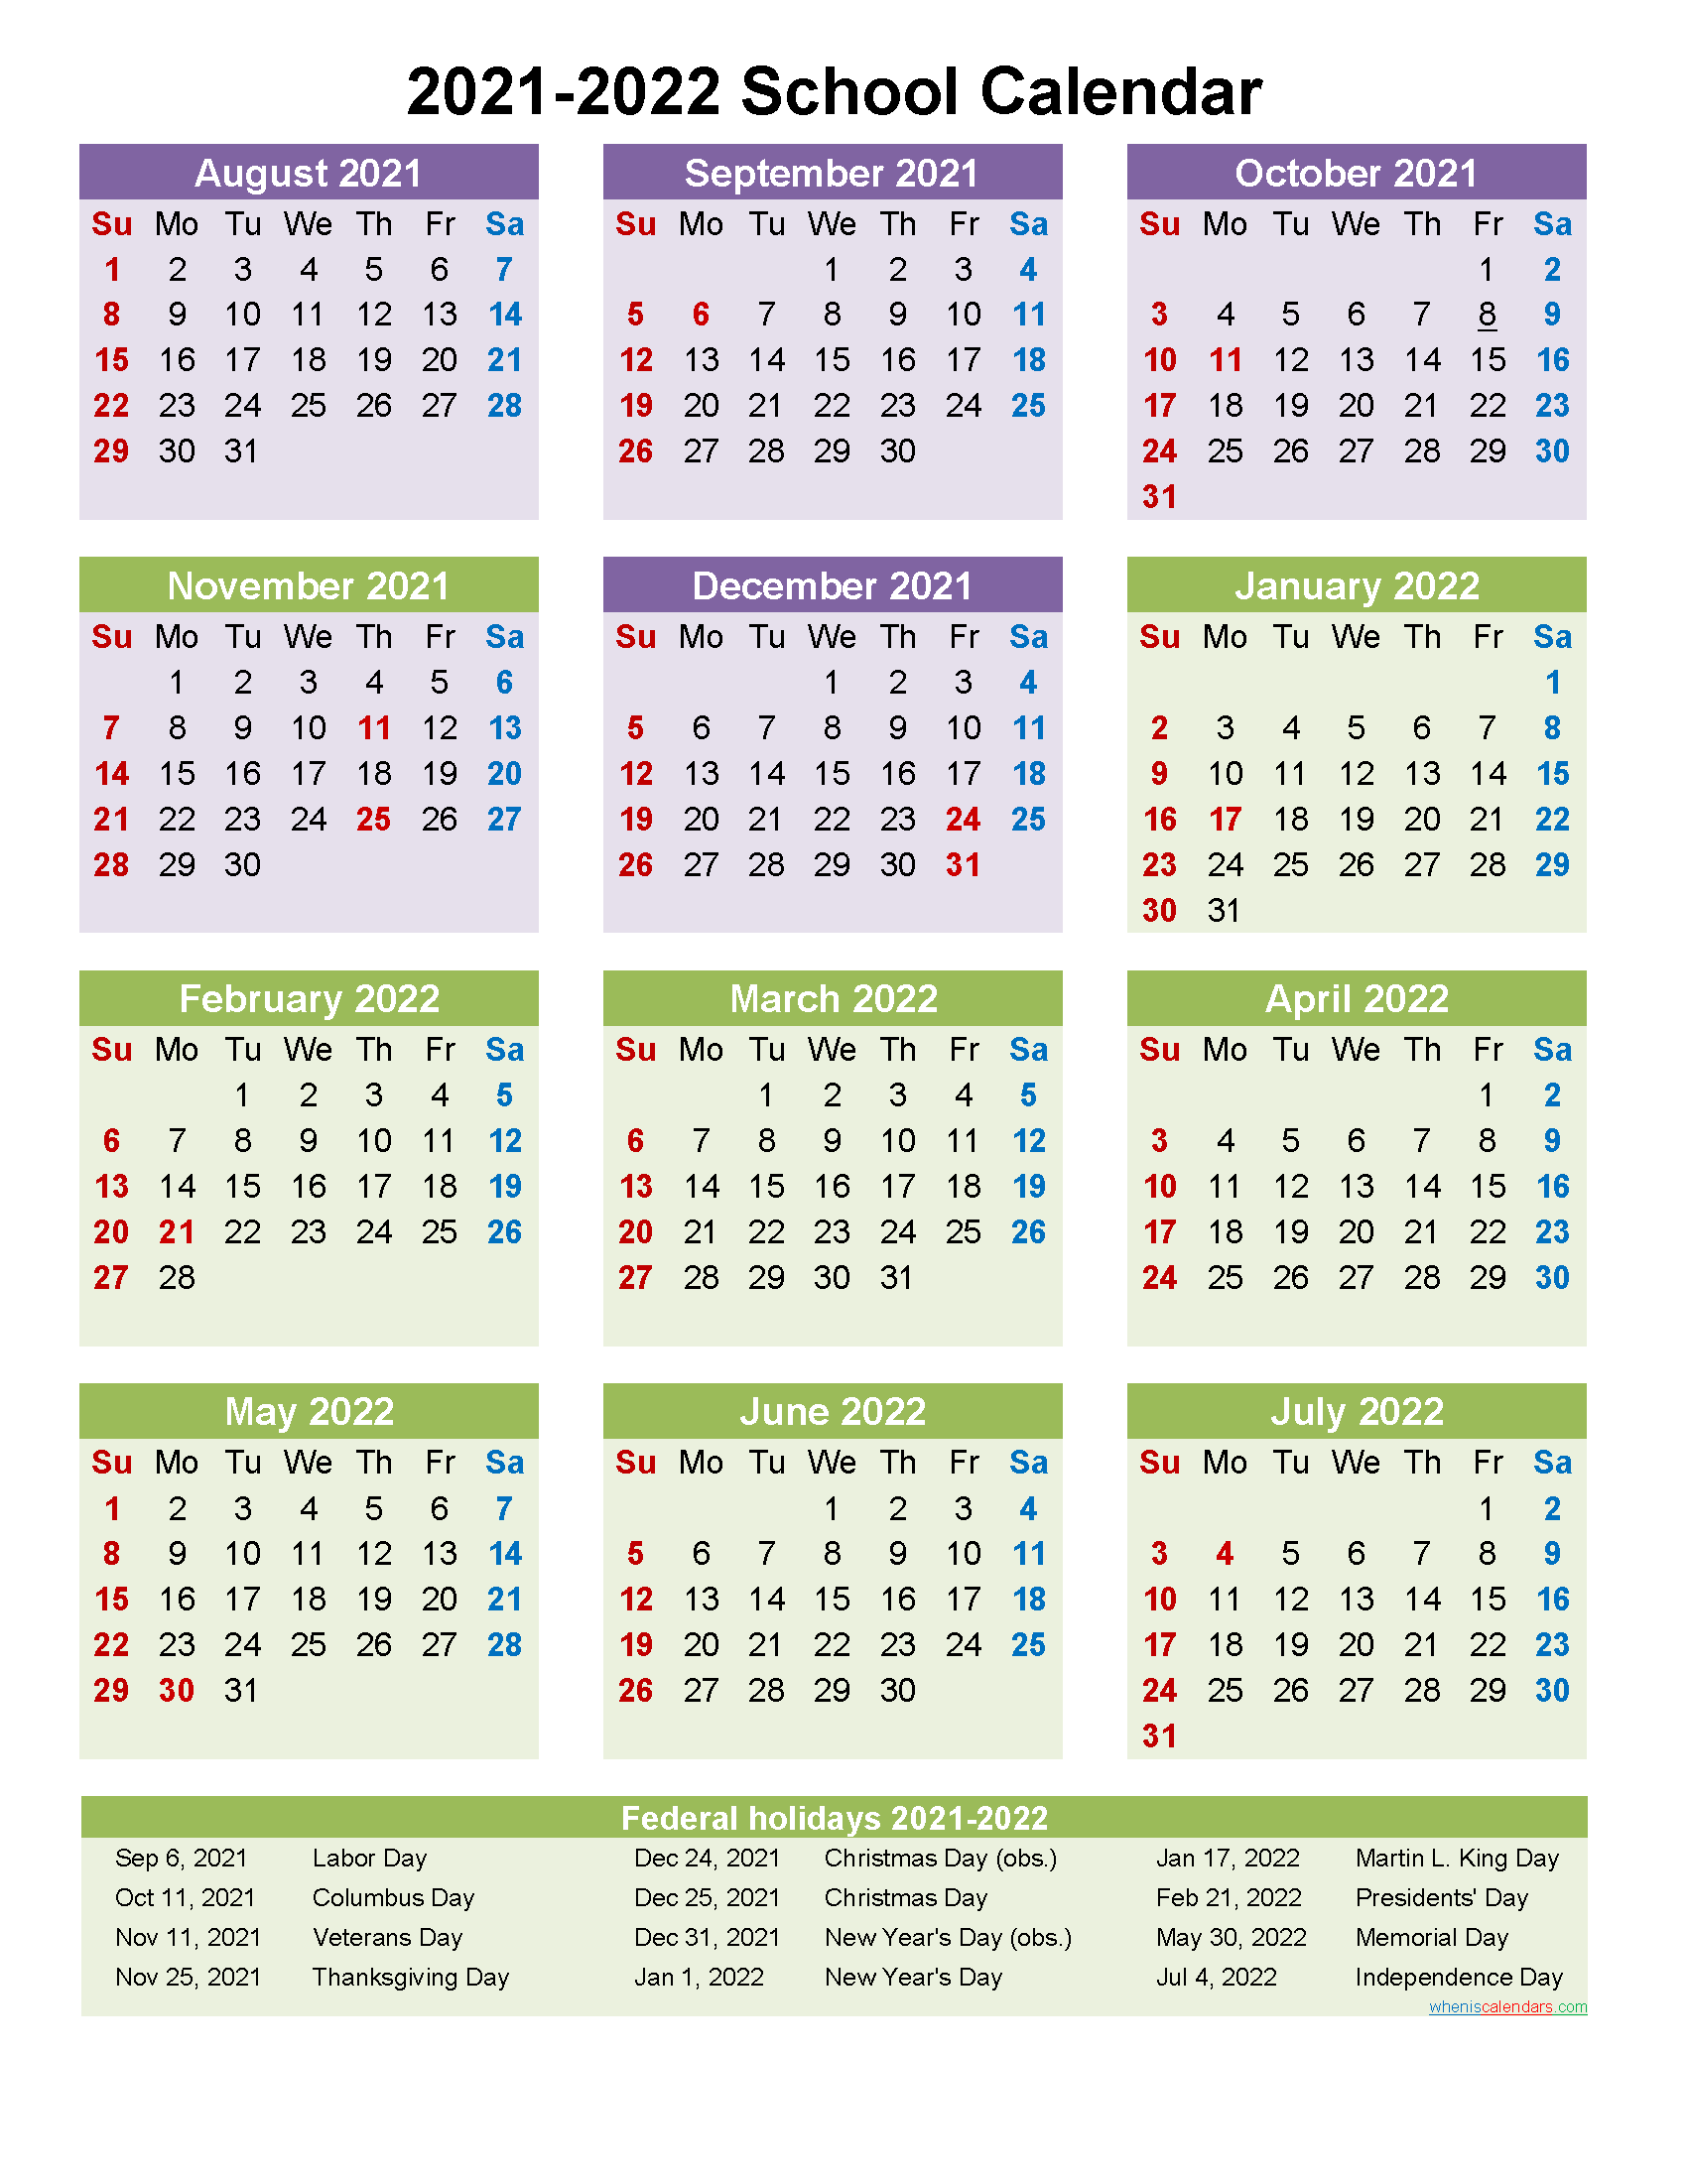 2022 calendar templates and images 2022 calendar portrait orientation